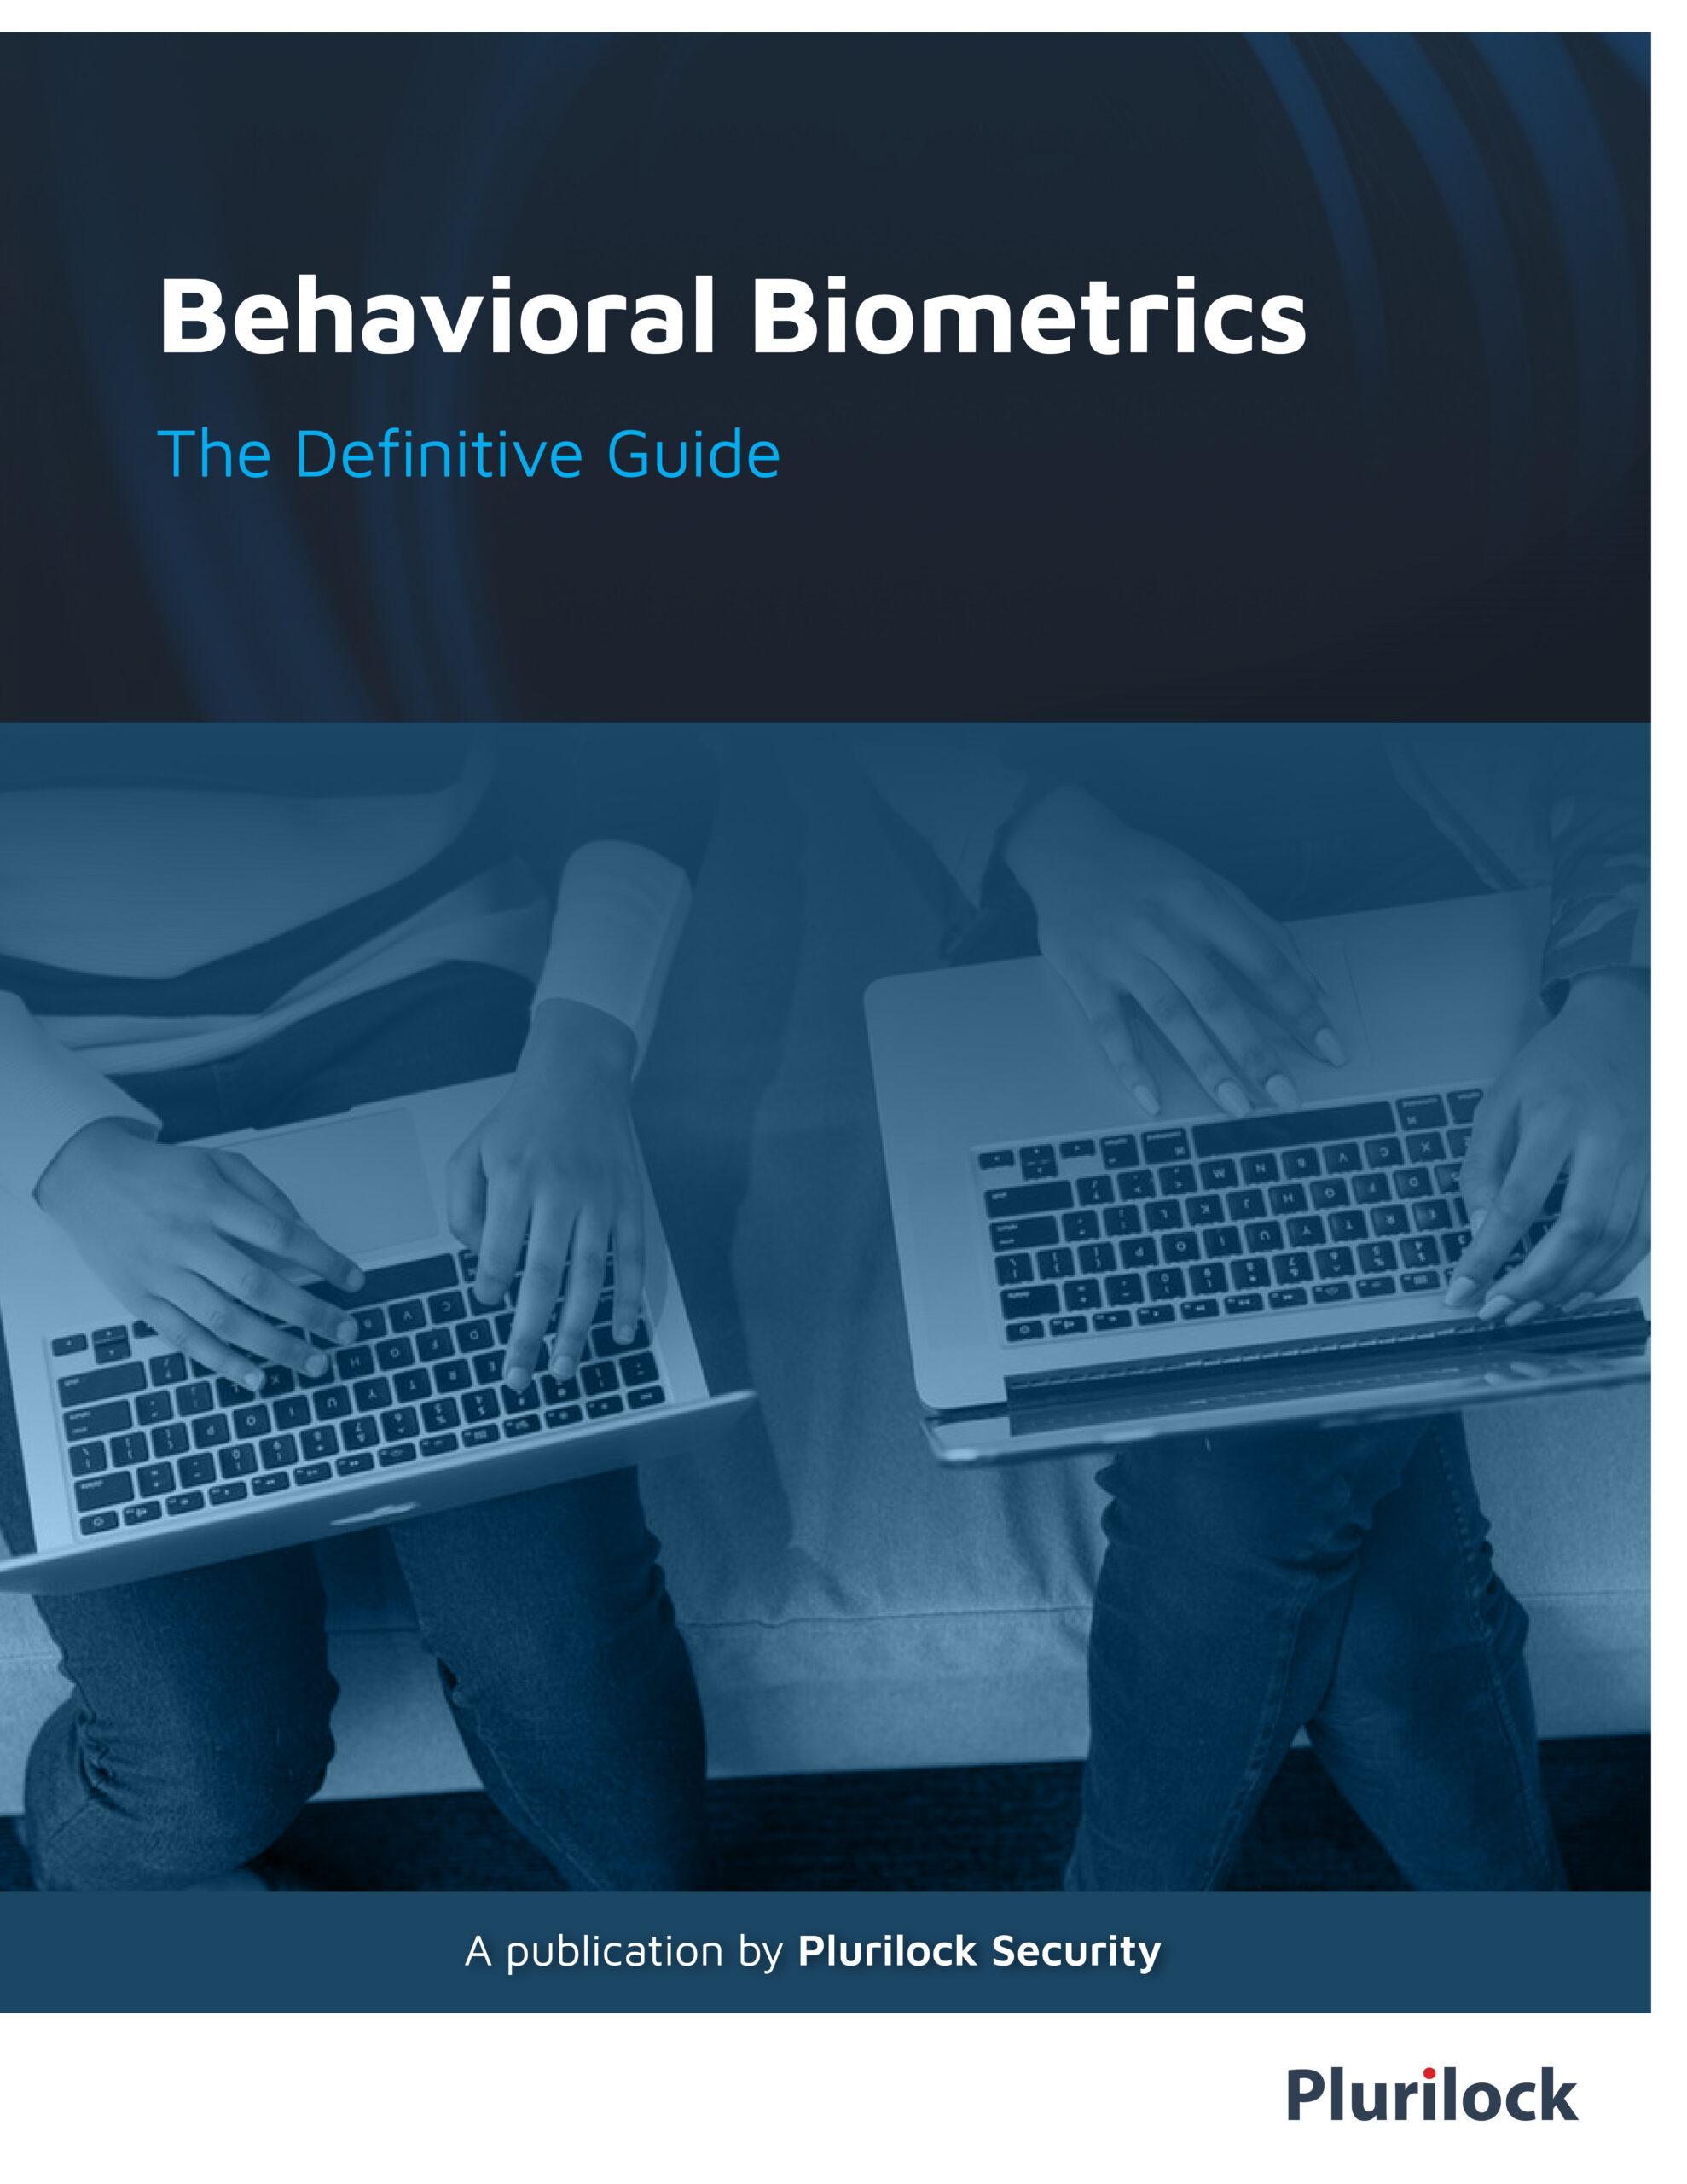 Behavioral Biometrics Guide